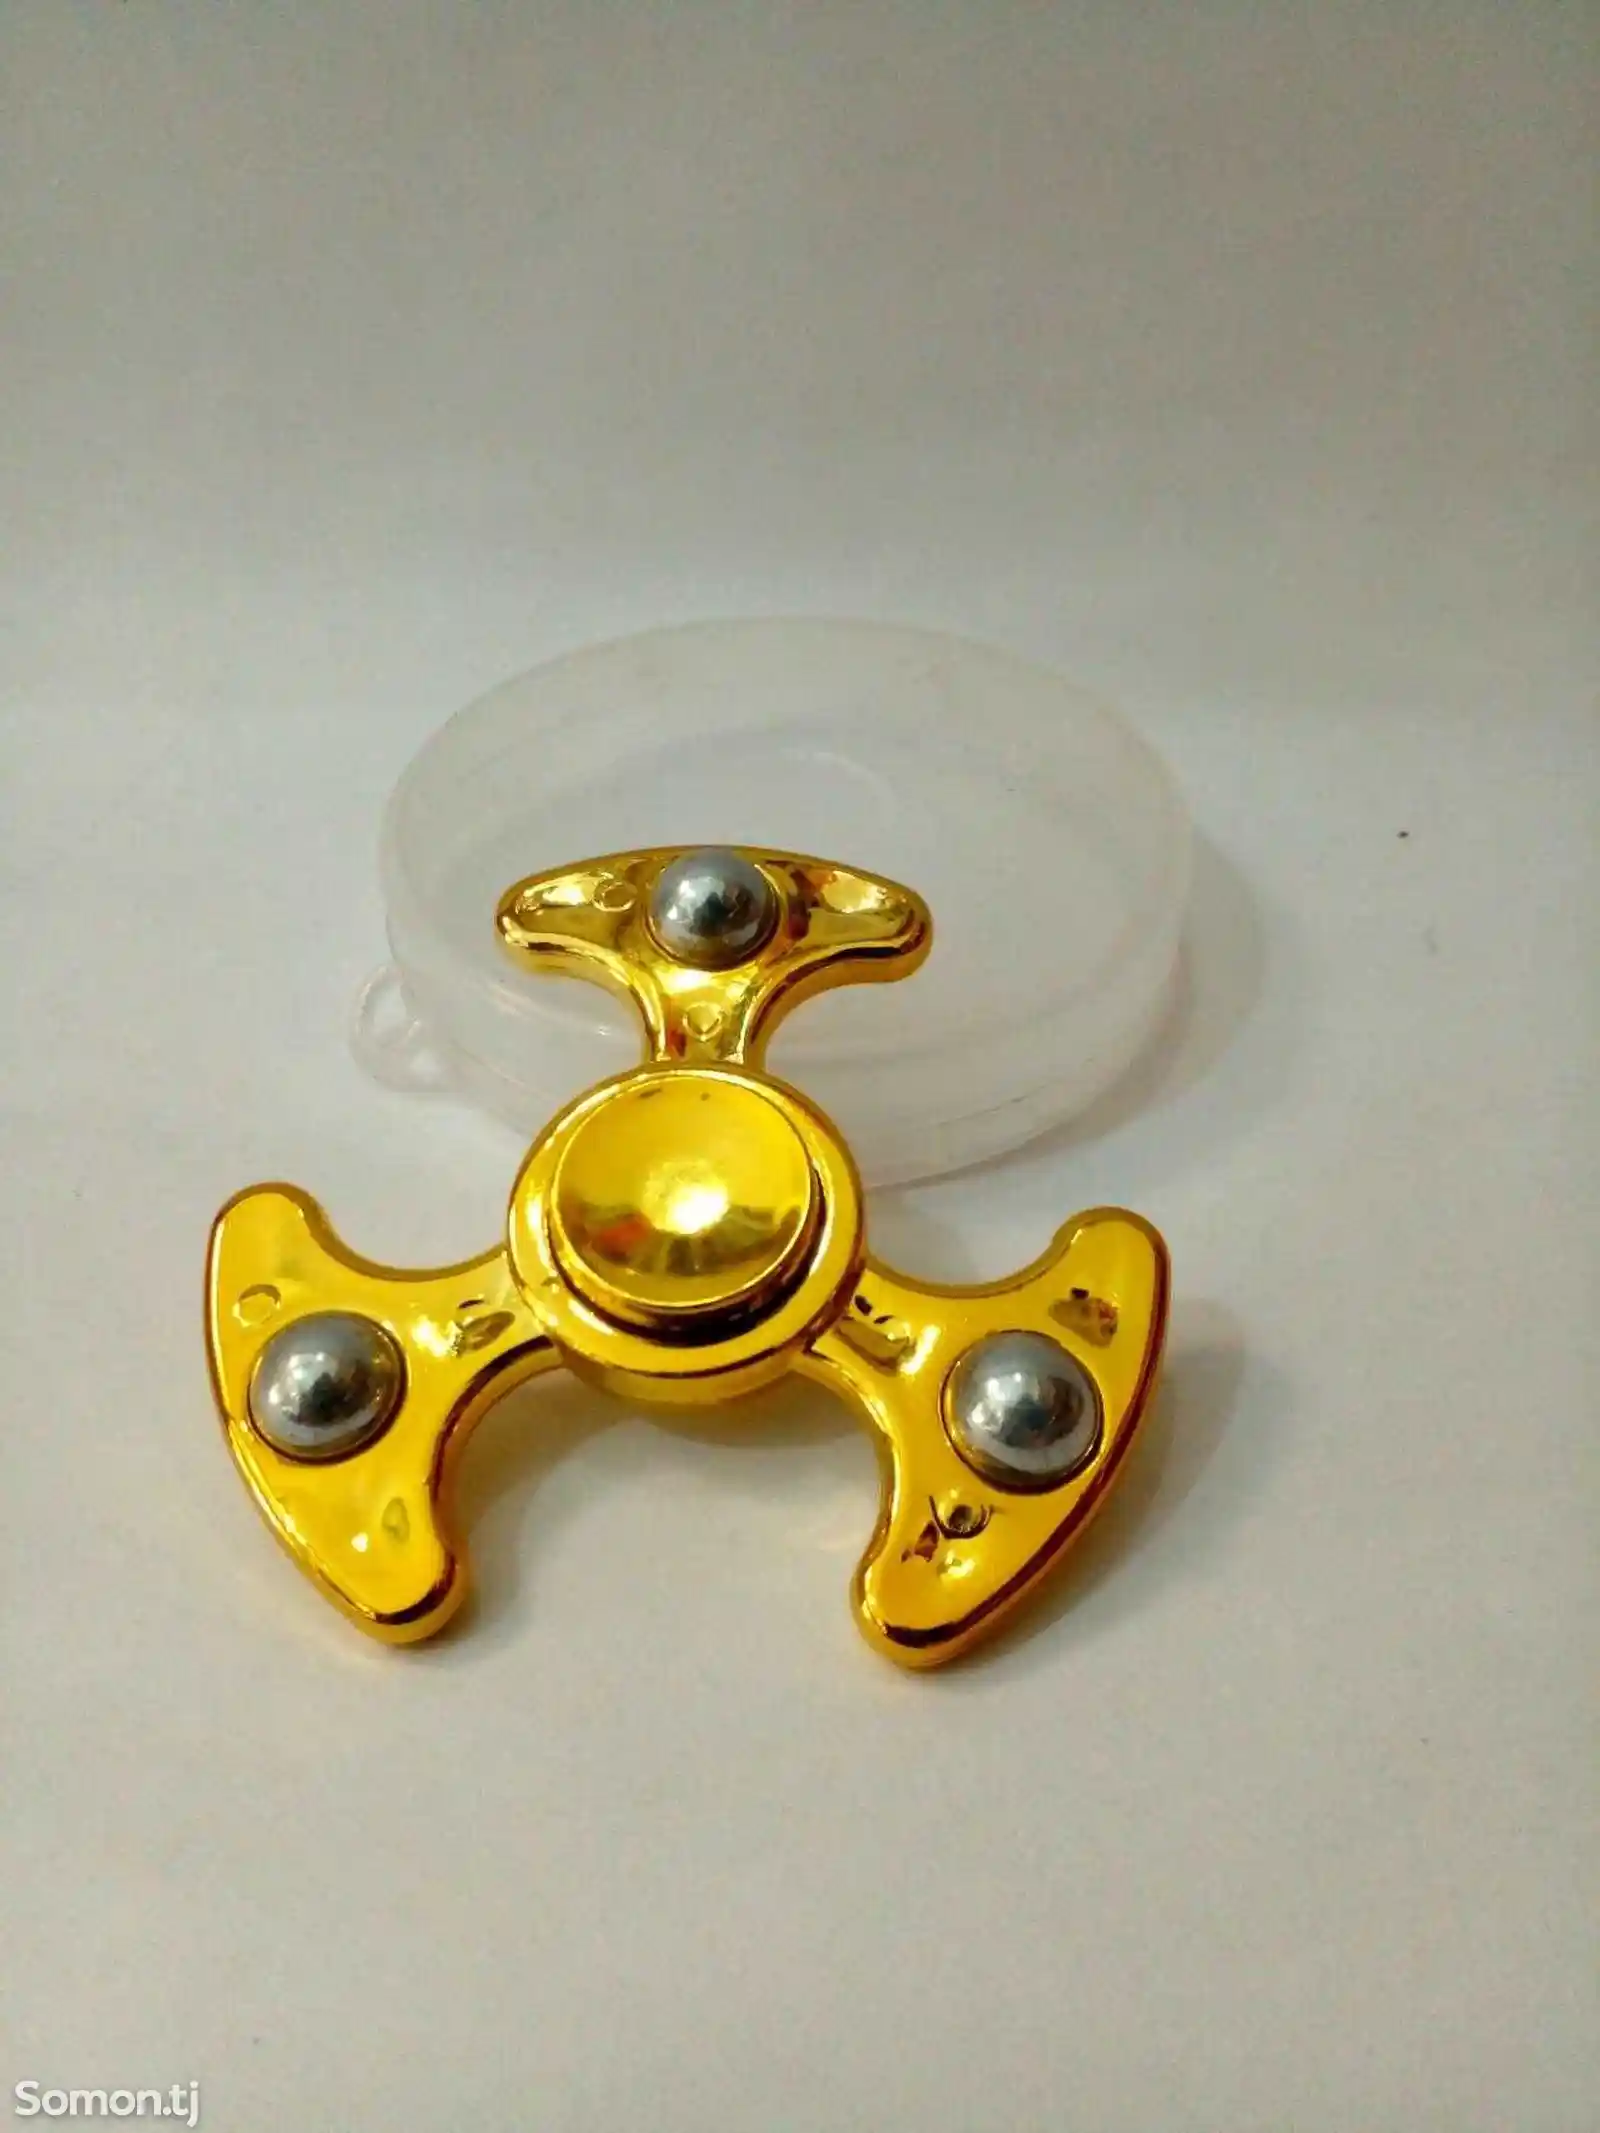 спинер железный золотистый тройка игрушка-1